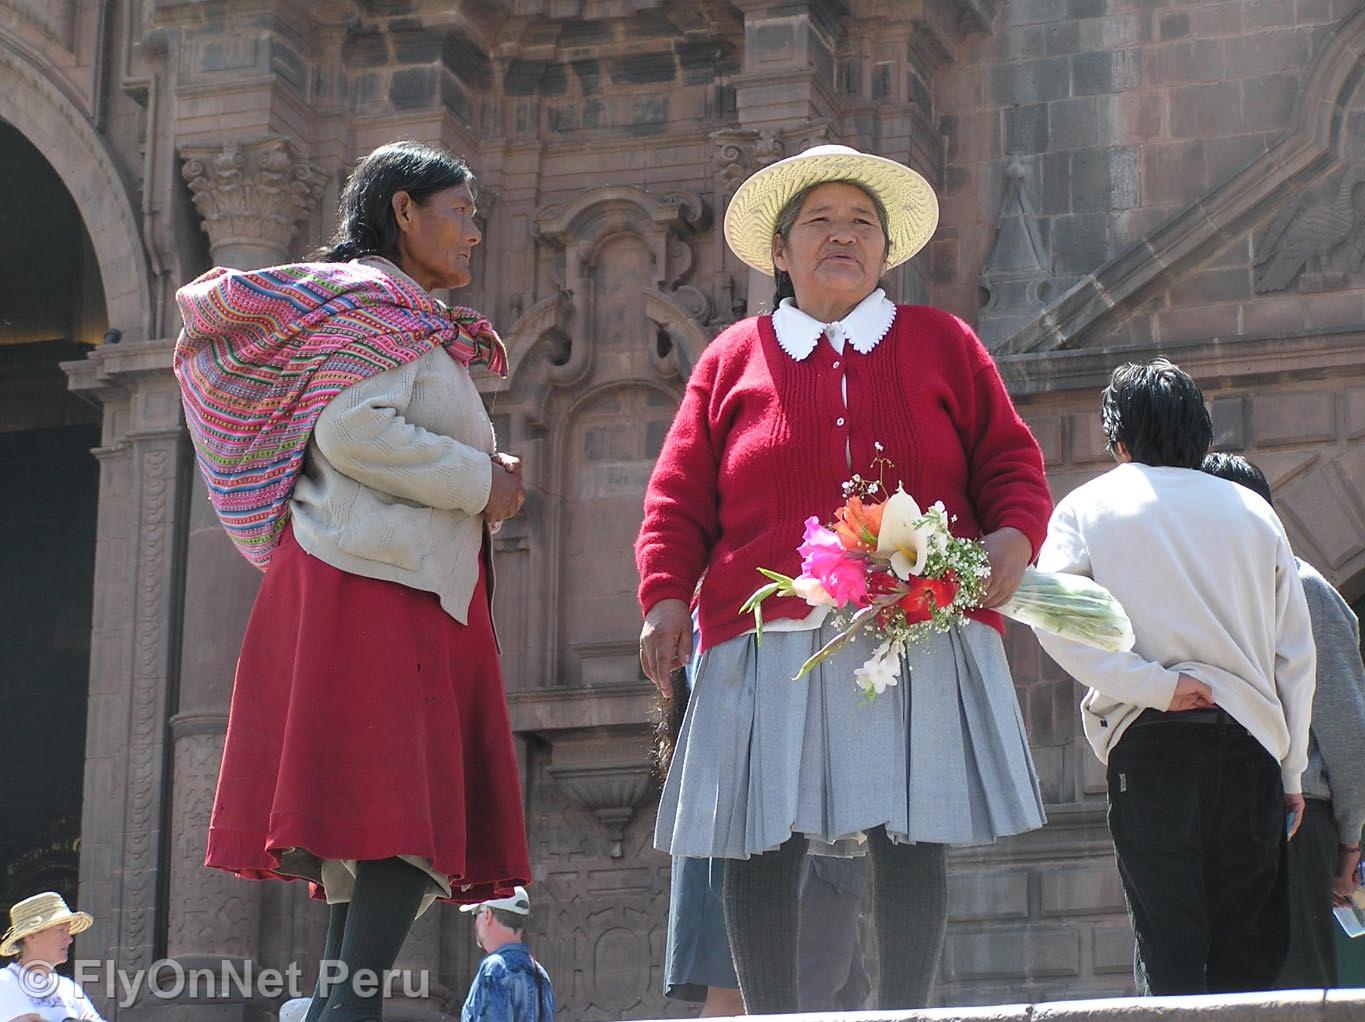 Álbum de fotos: Women from Cusco, Cuzco